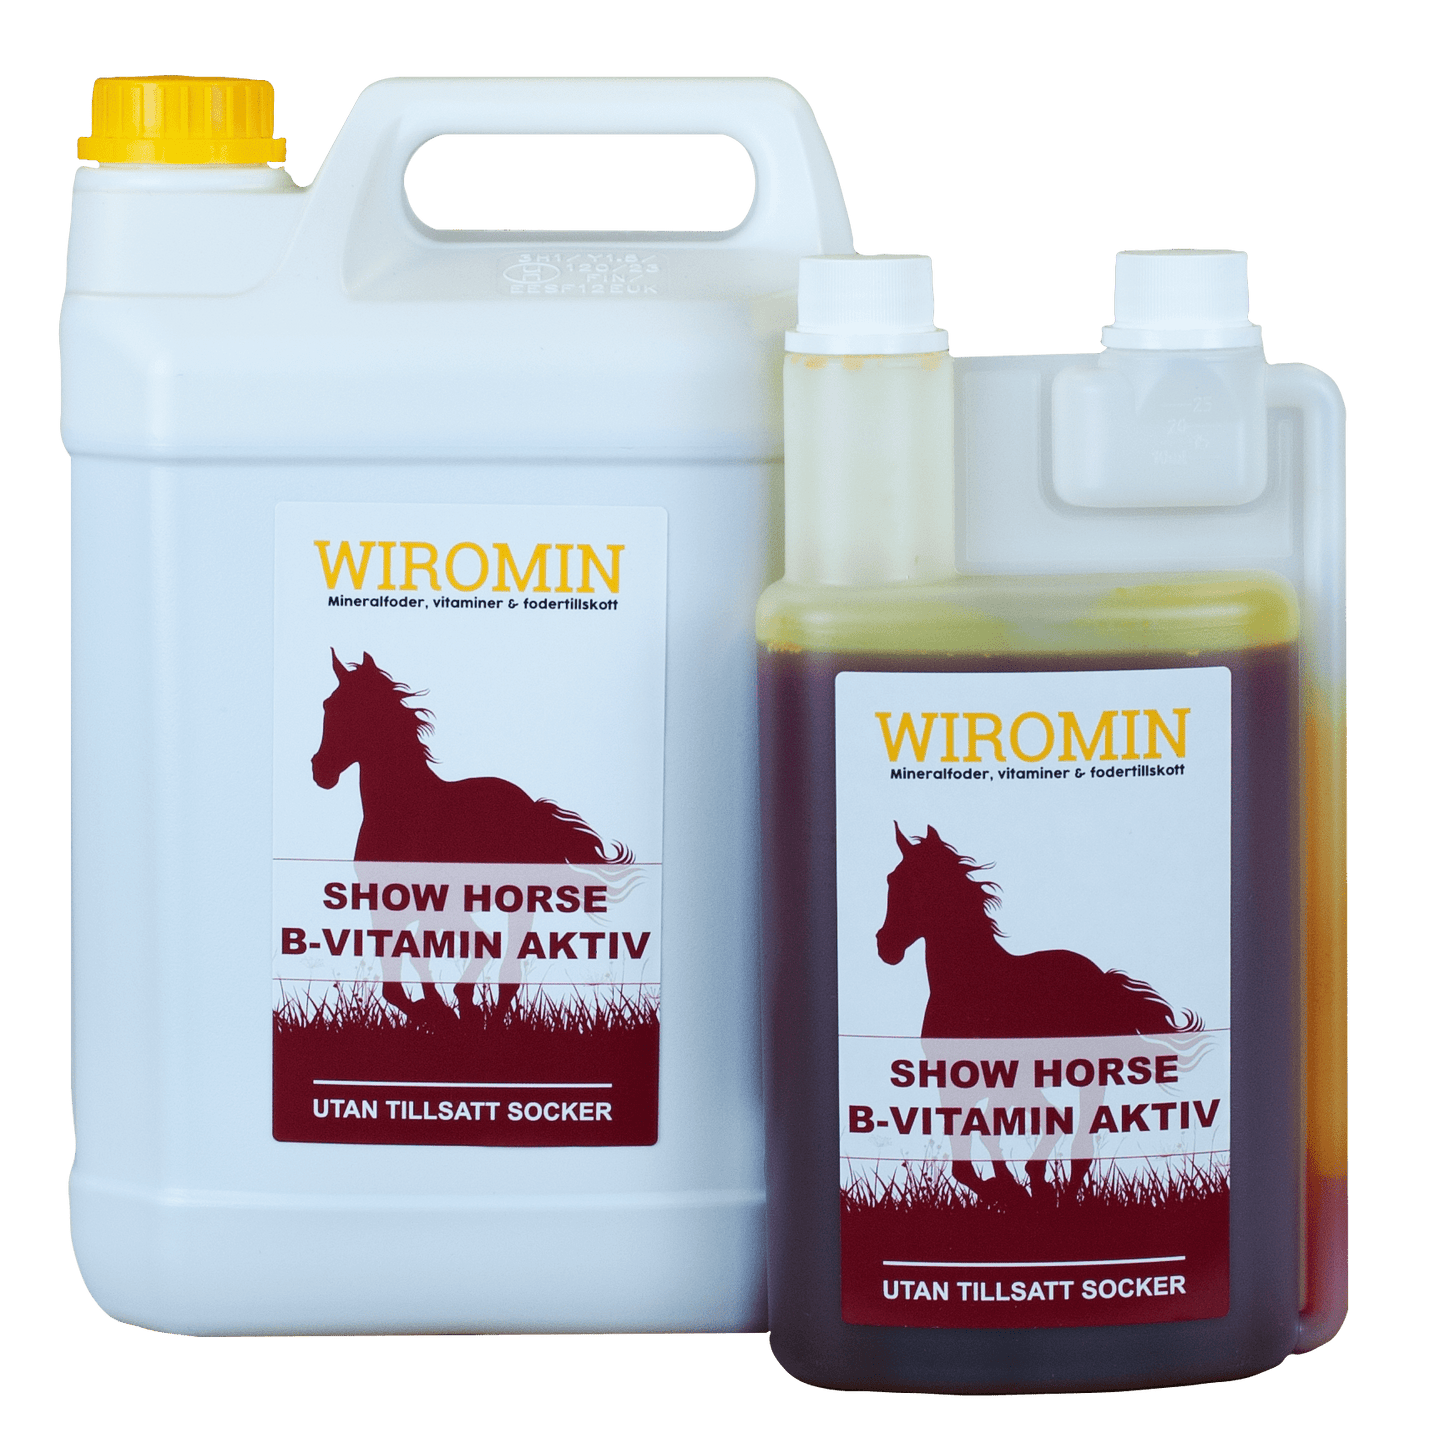 Show Horse - B-Vitamin Aktiv